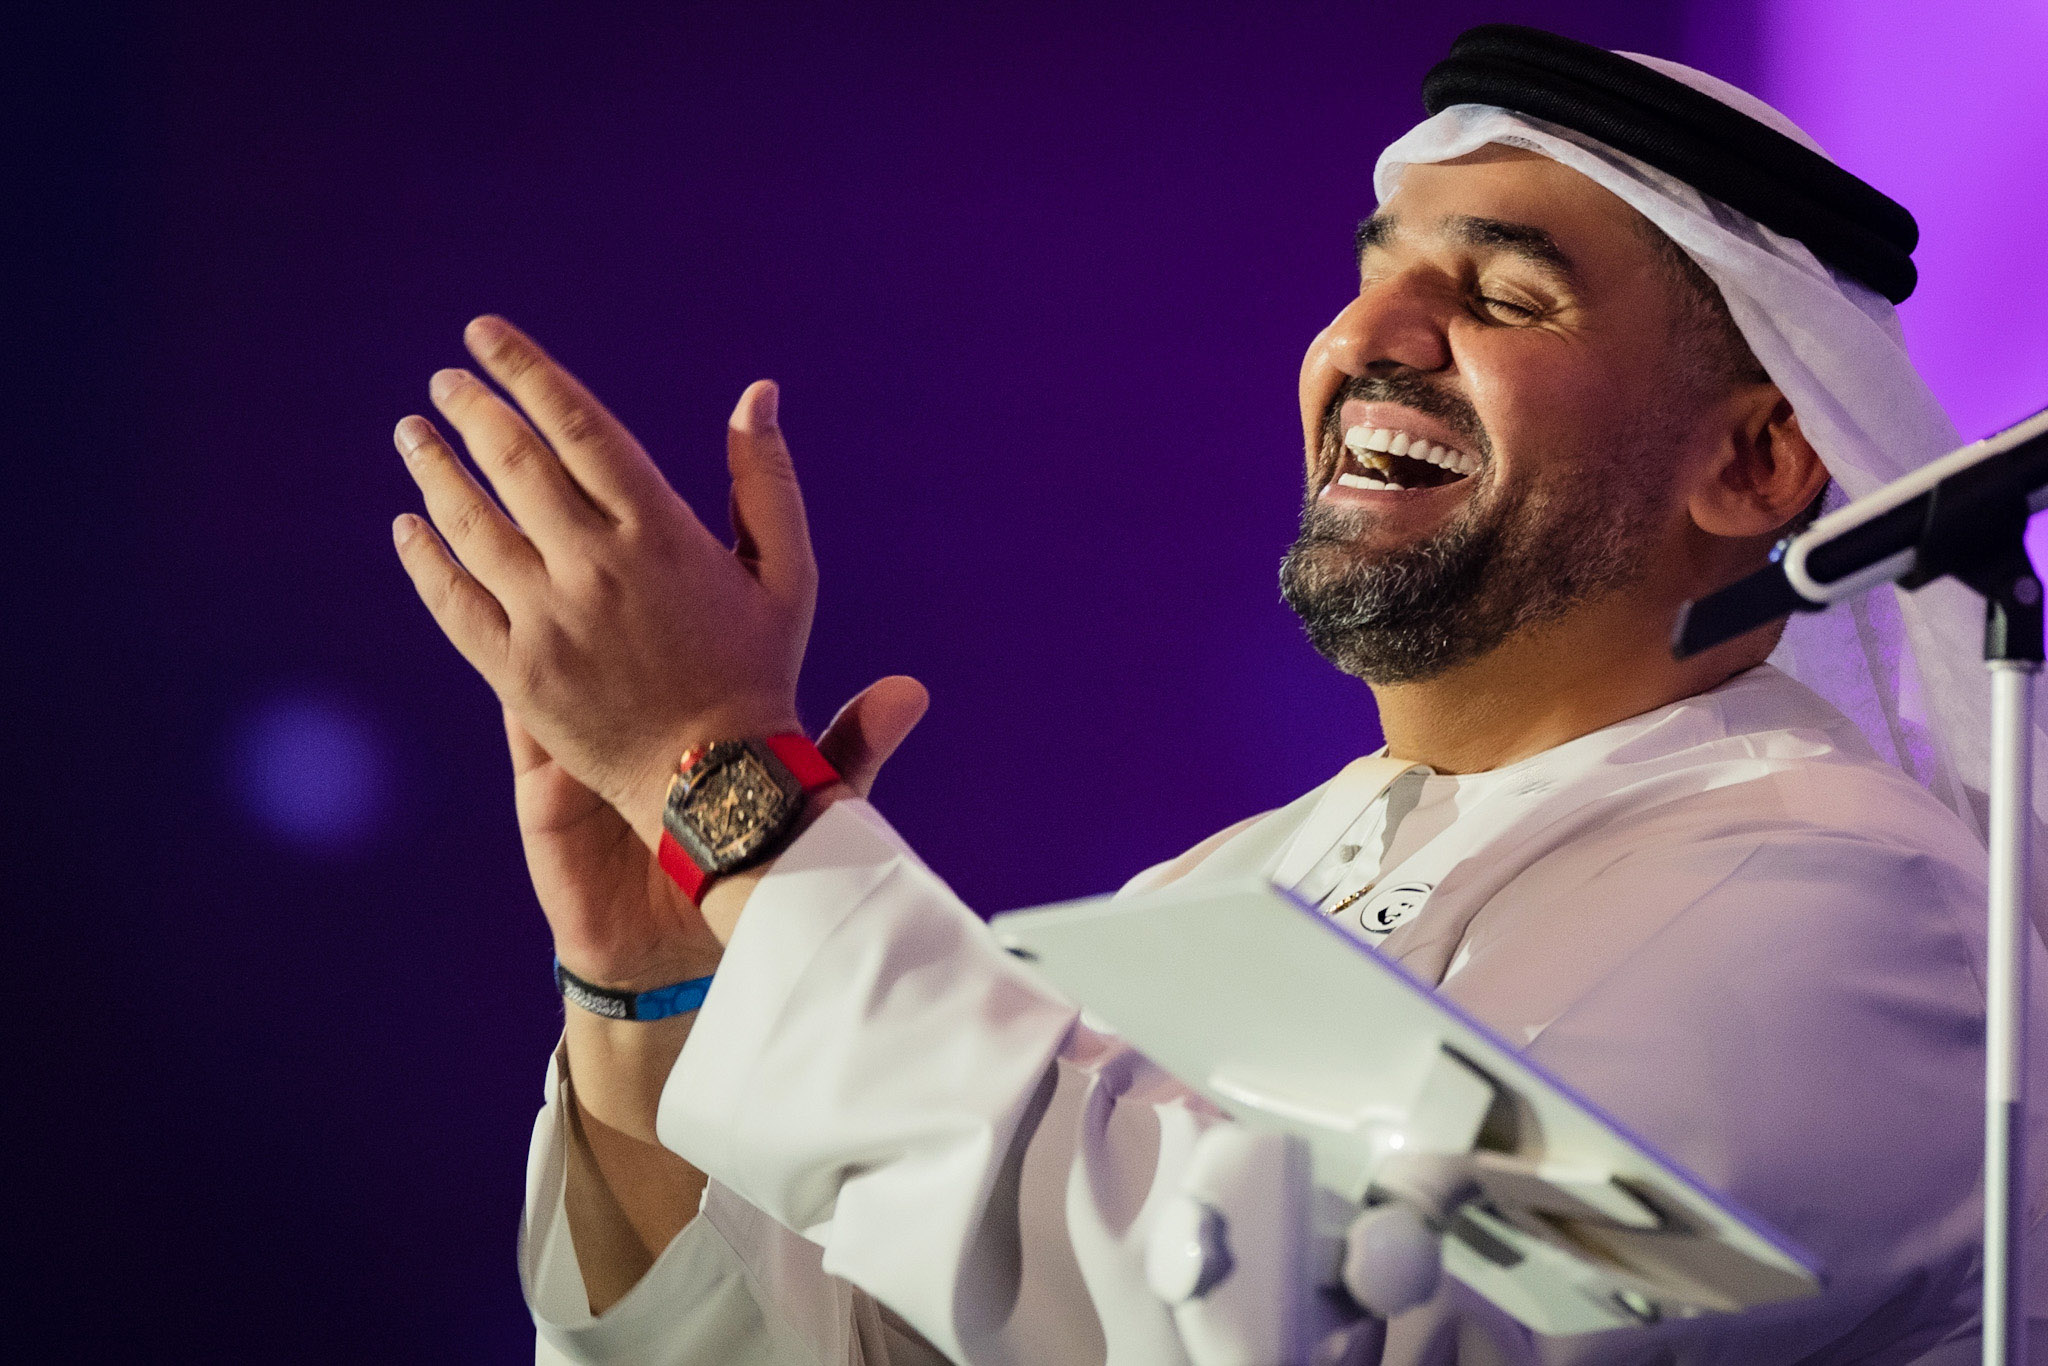 حسین الجسمي یَطرب على غناء الجمھور السعودي في جدة إحتفالاً  بالیوم الوطني الـ91 للمملكة